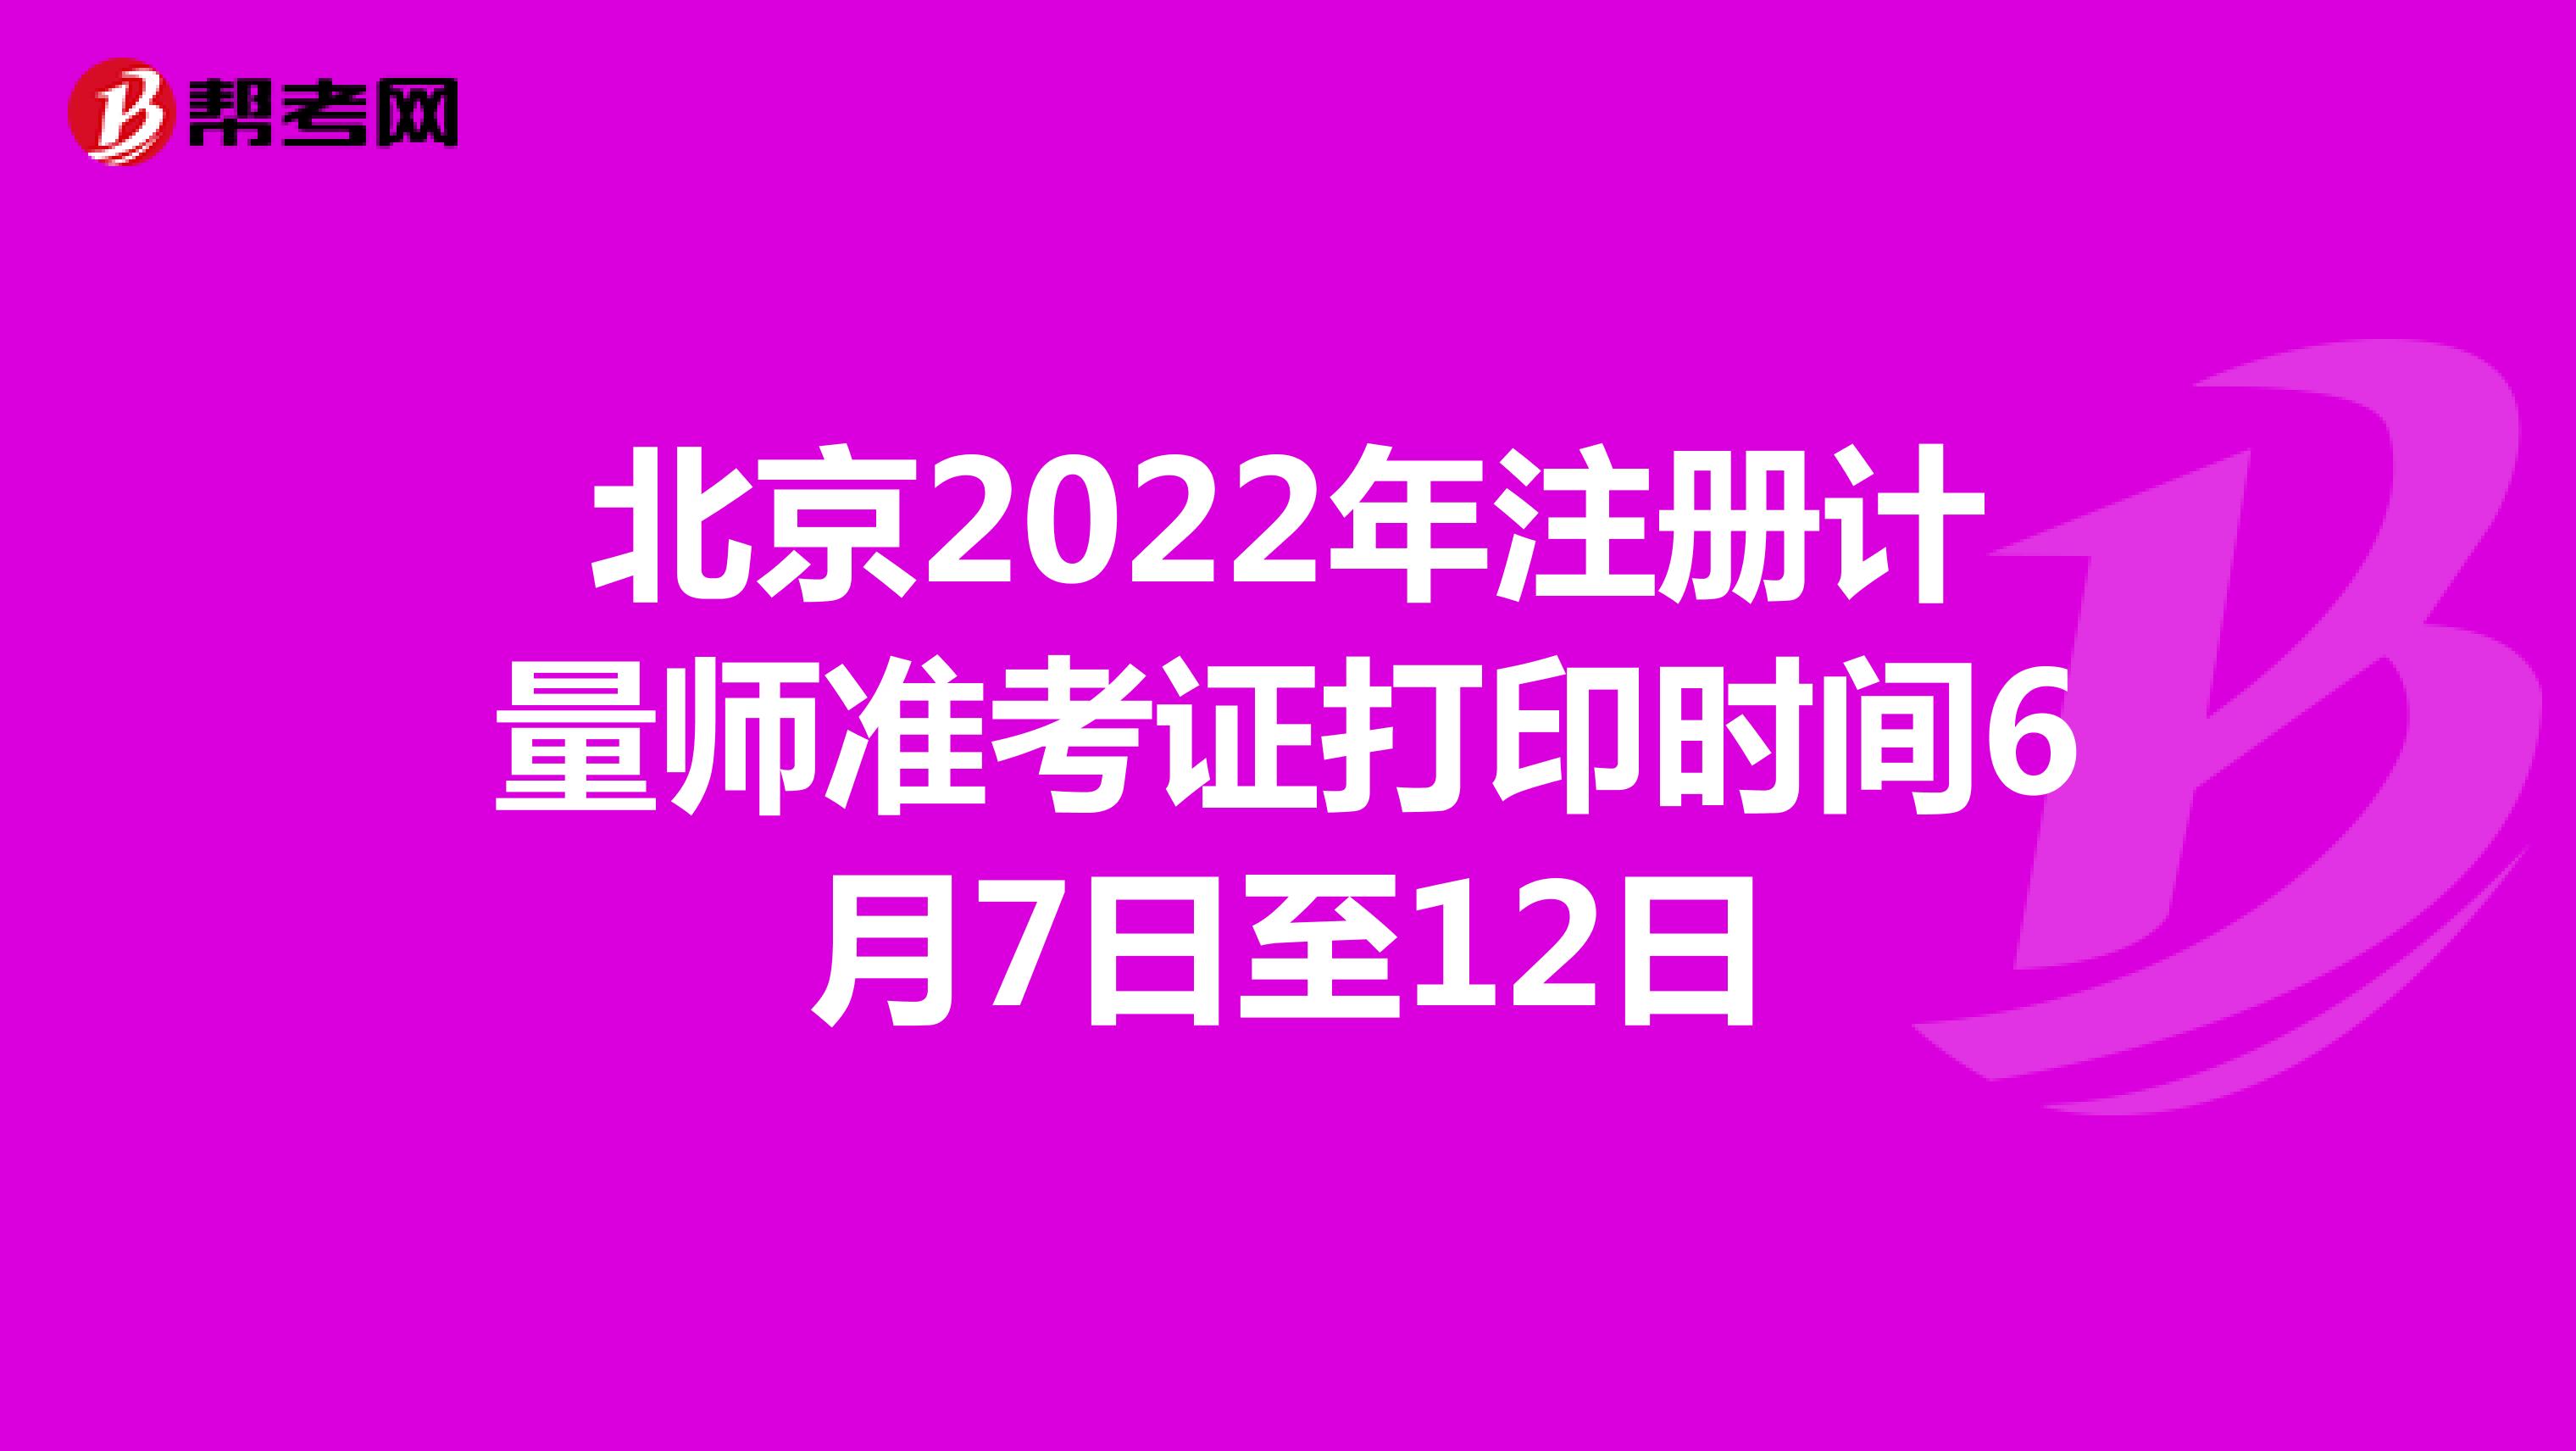 北京2022年注册计量师准考证打印时间6月7日至12日